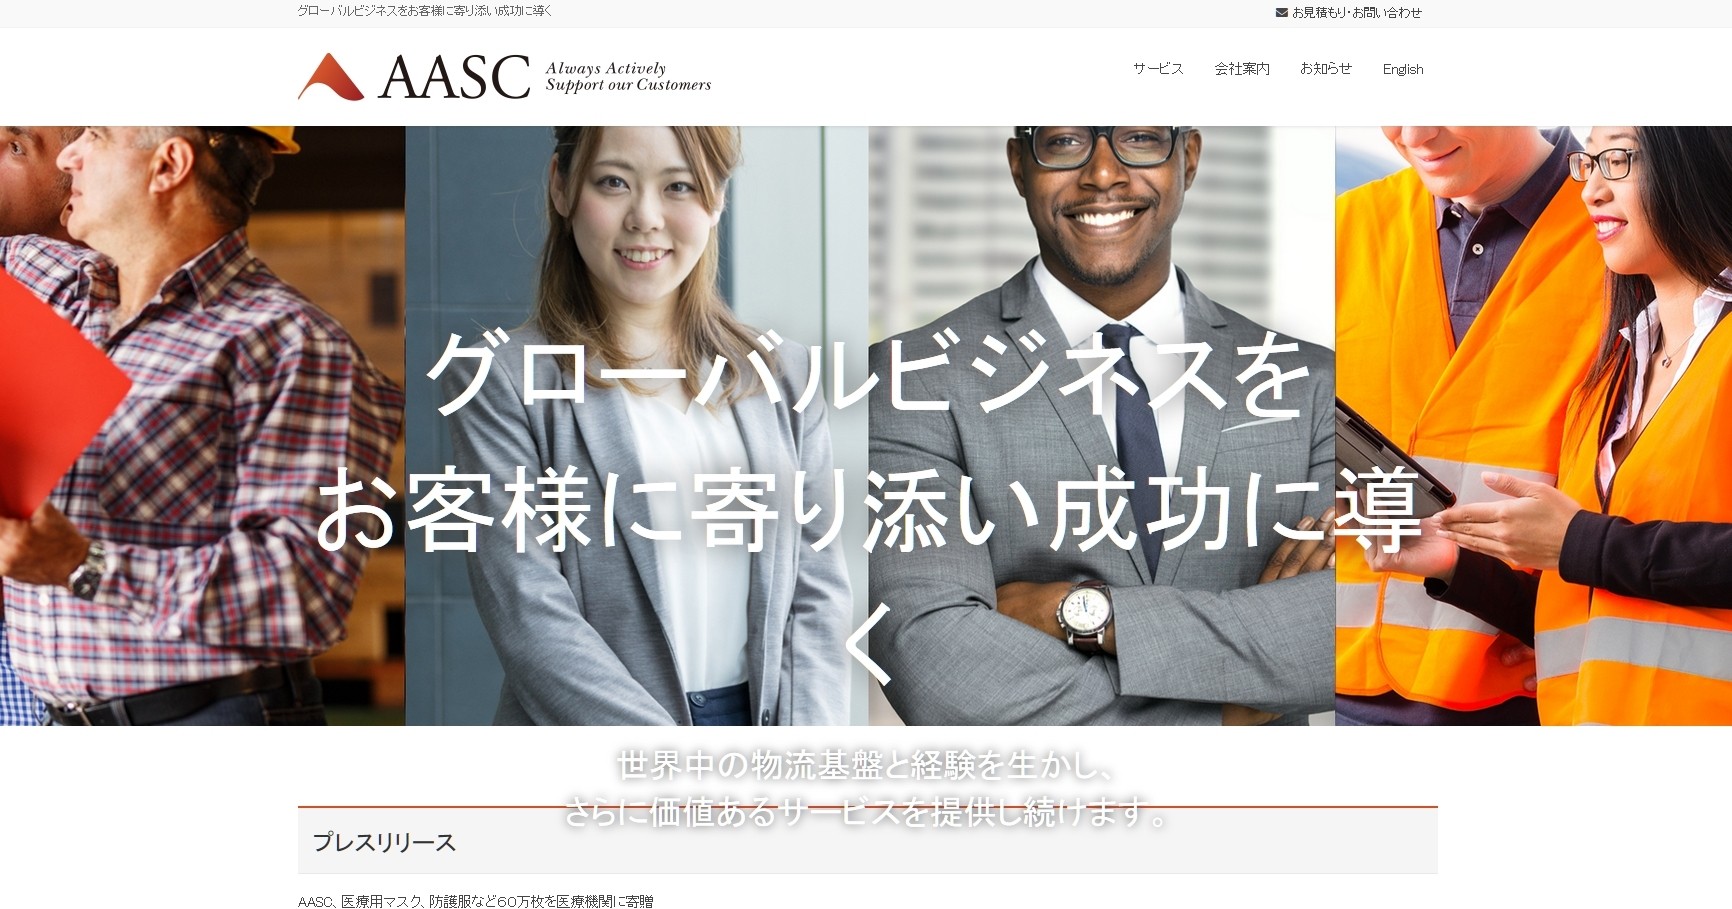 AASC株式会社のAASC株式会社サービス